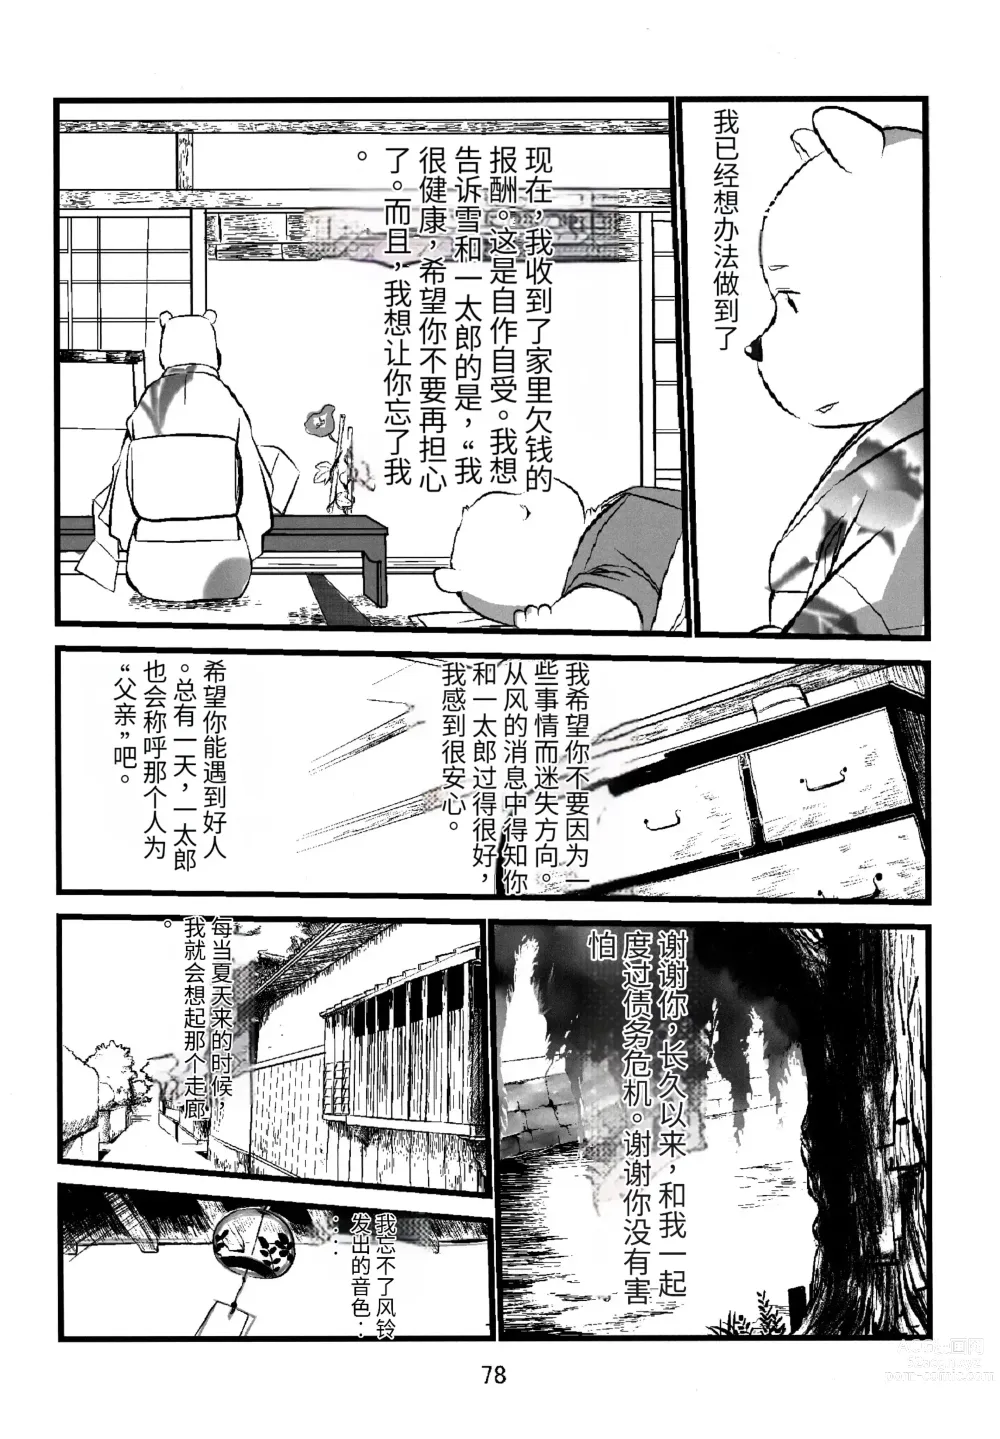 Page 75 of doujinshi Kemono no Roukaku - Utage